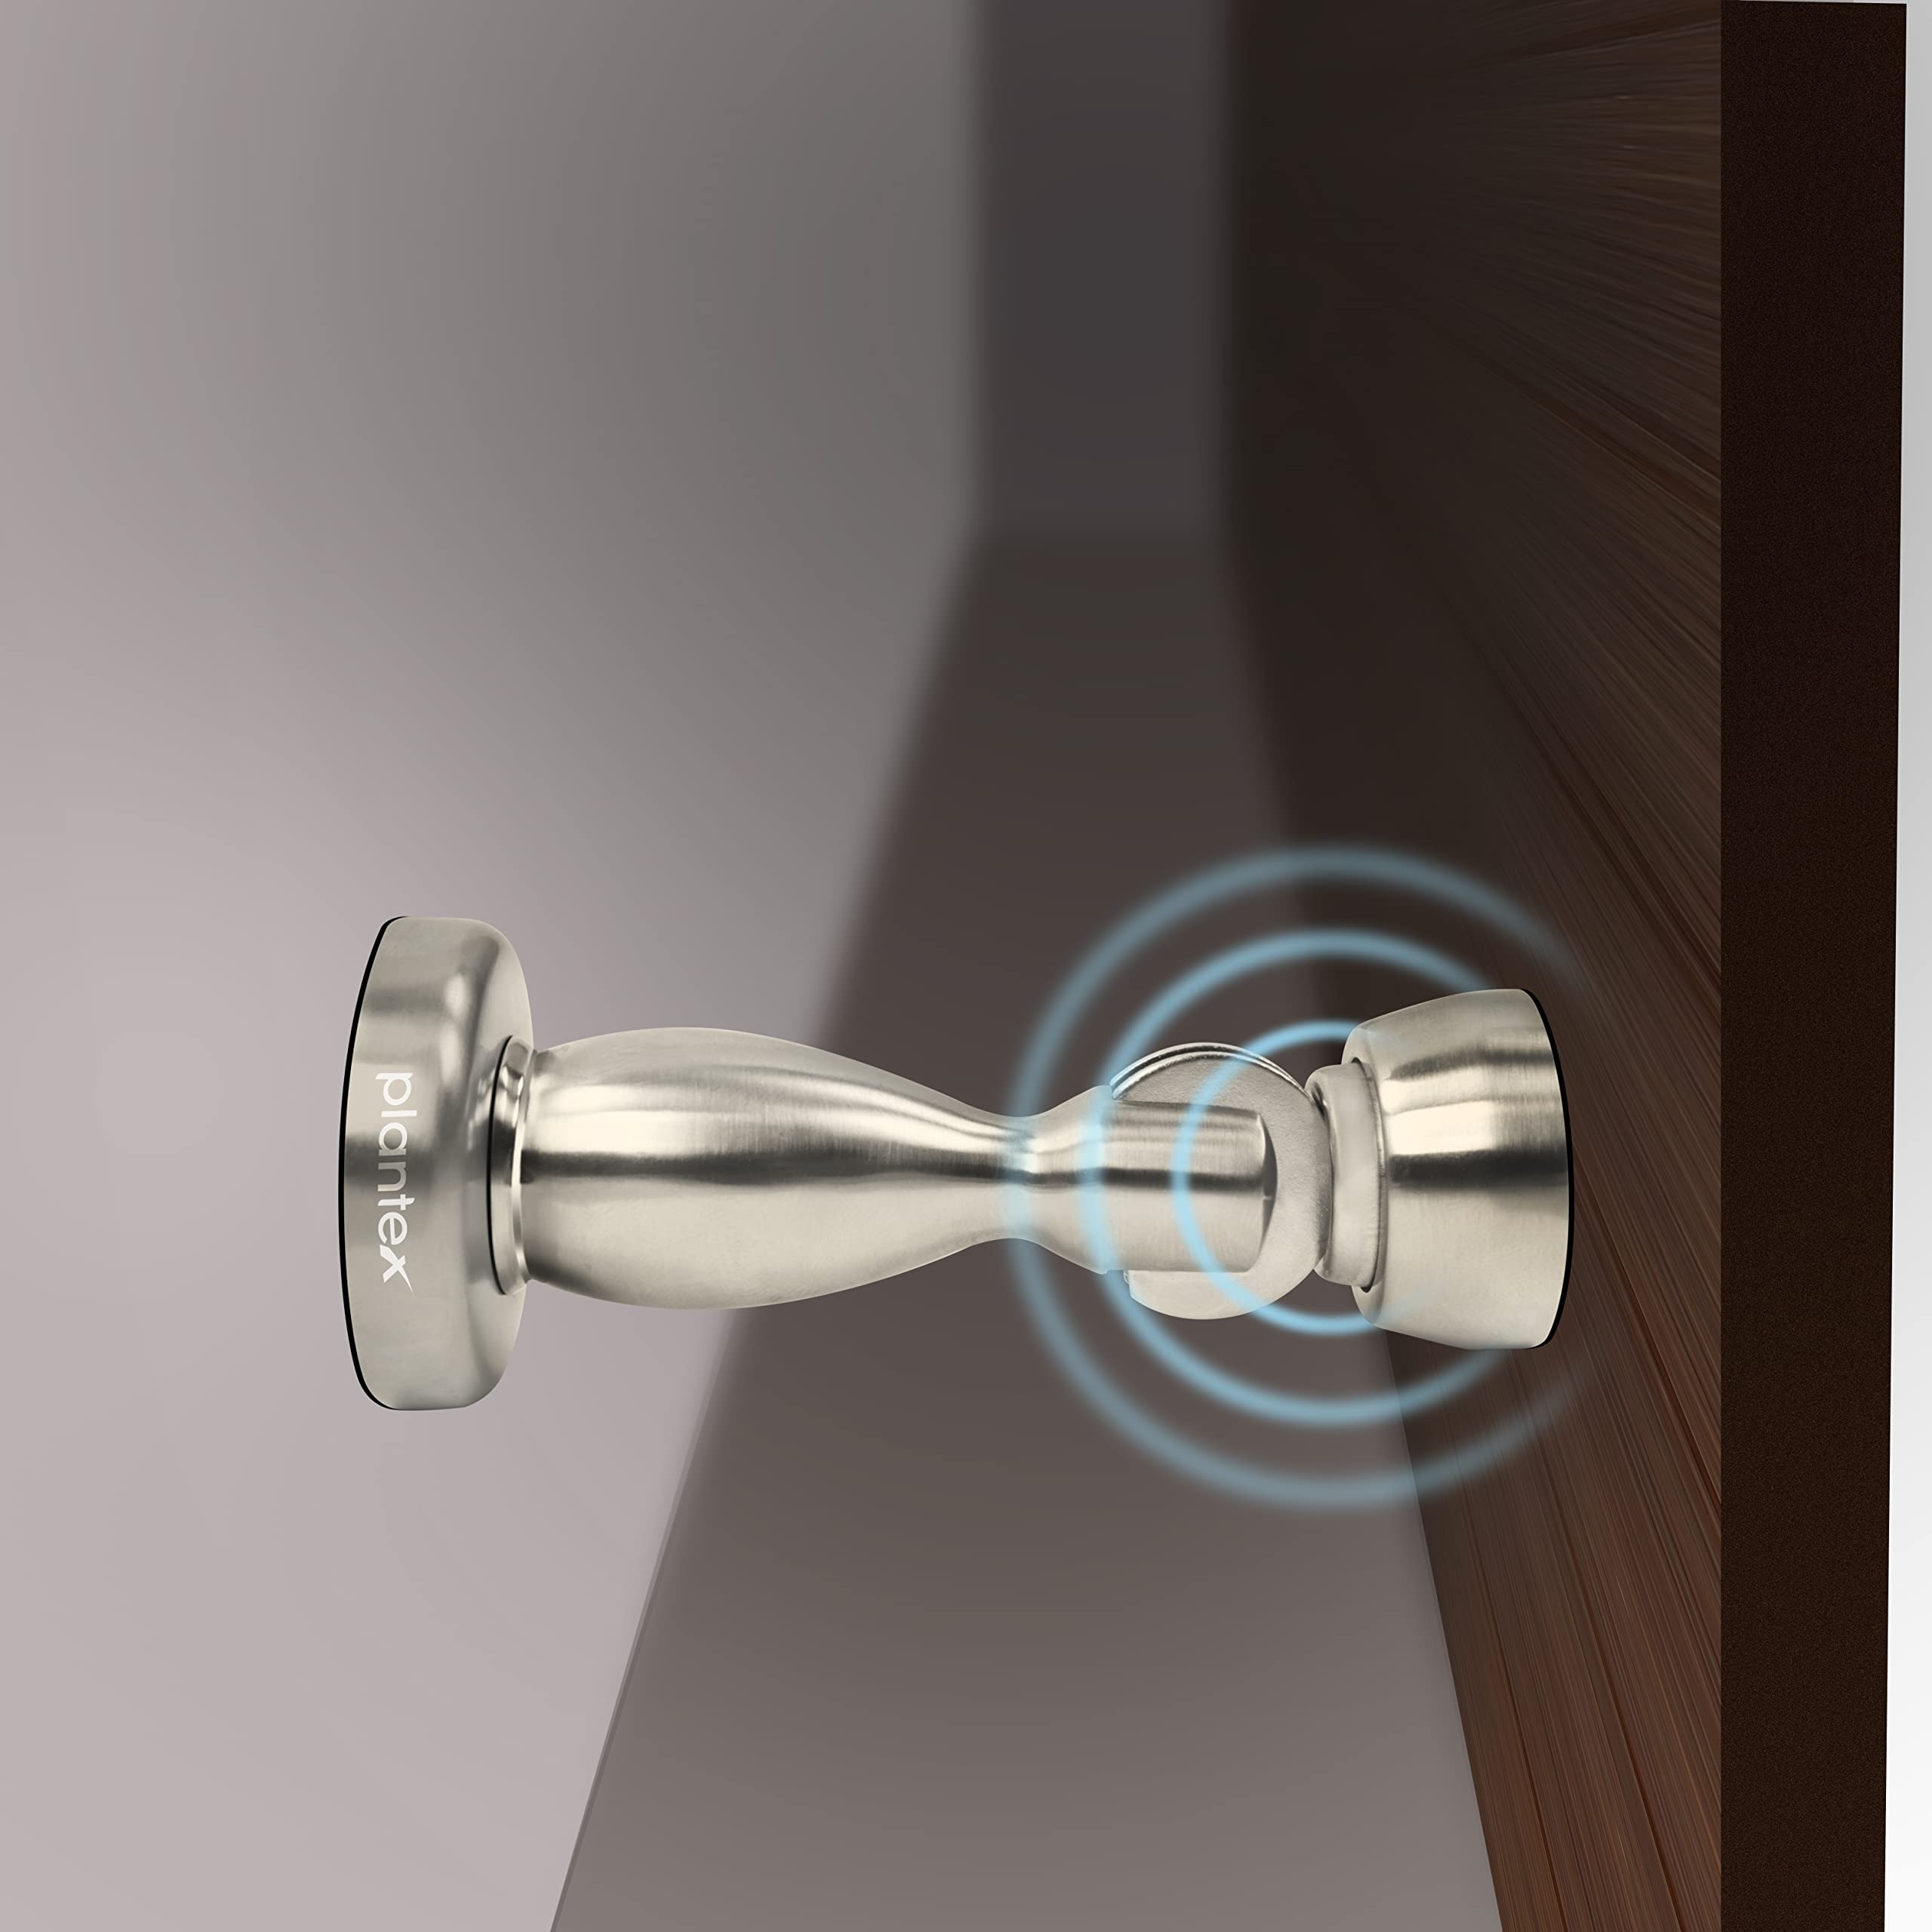 Plantex Magnetic Door Stopper for Home/ 360 Degree Magnet Door Catcher/Door Holder for Main Door/Bedroom/Office and Hotel Door - Pack of 2 (4 inch, Silver Matt)